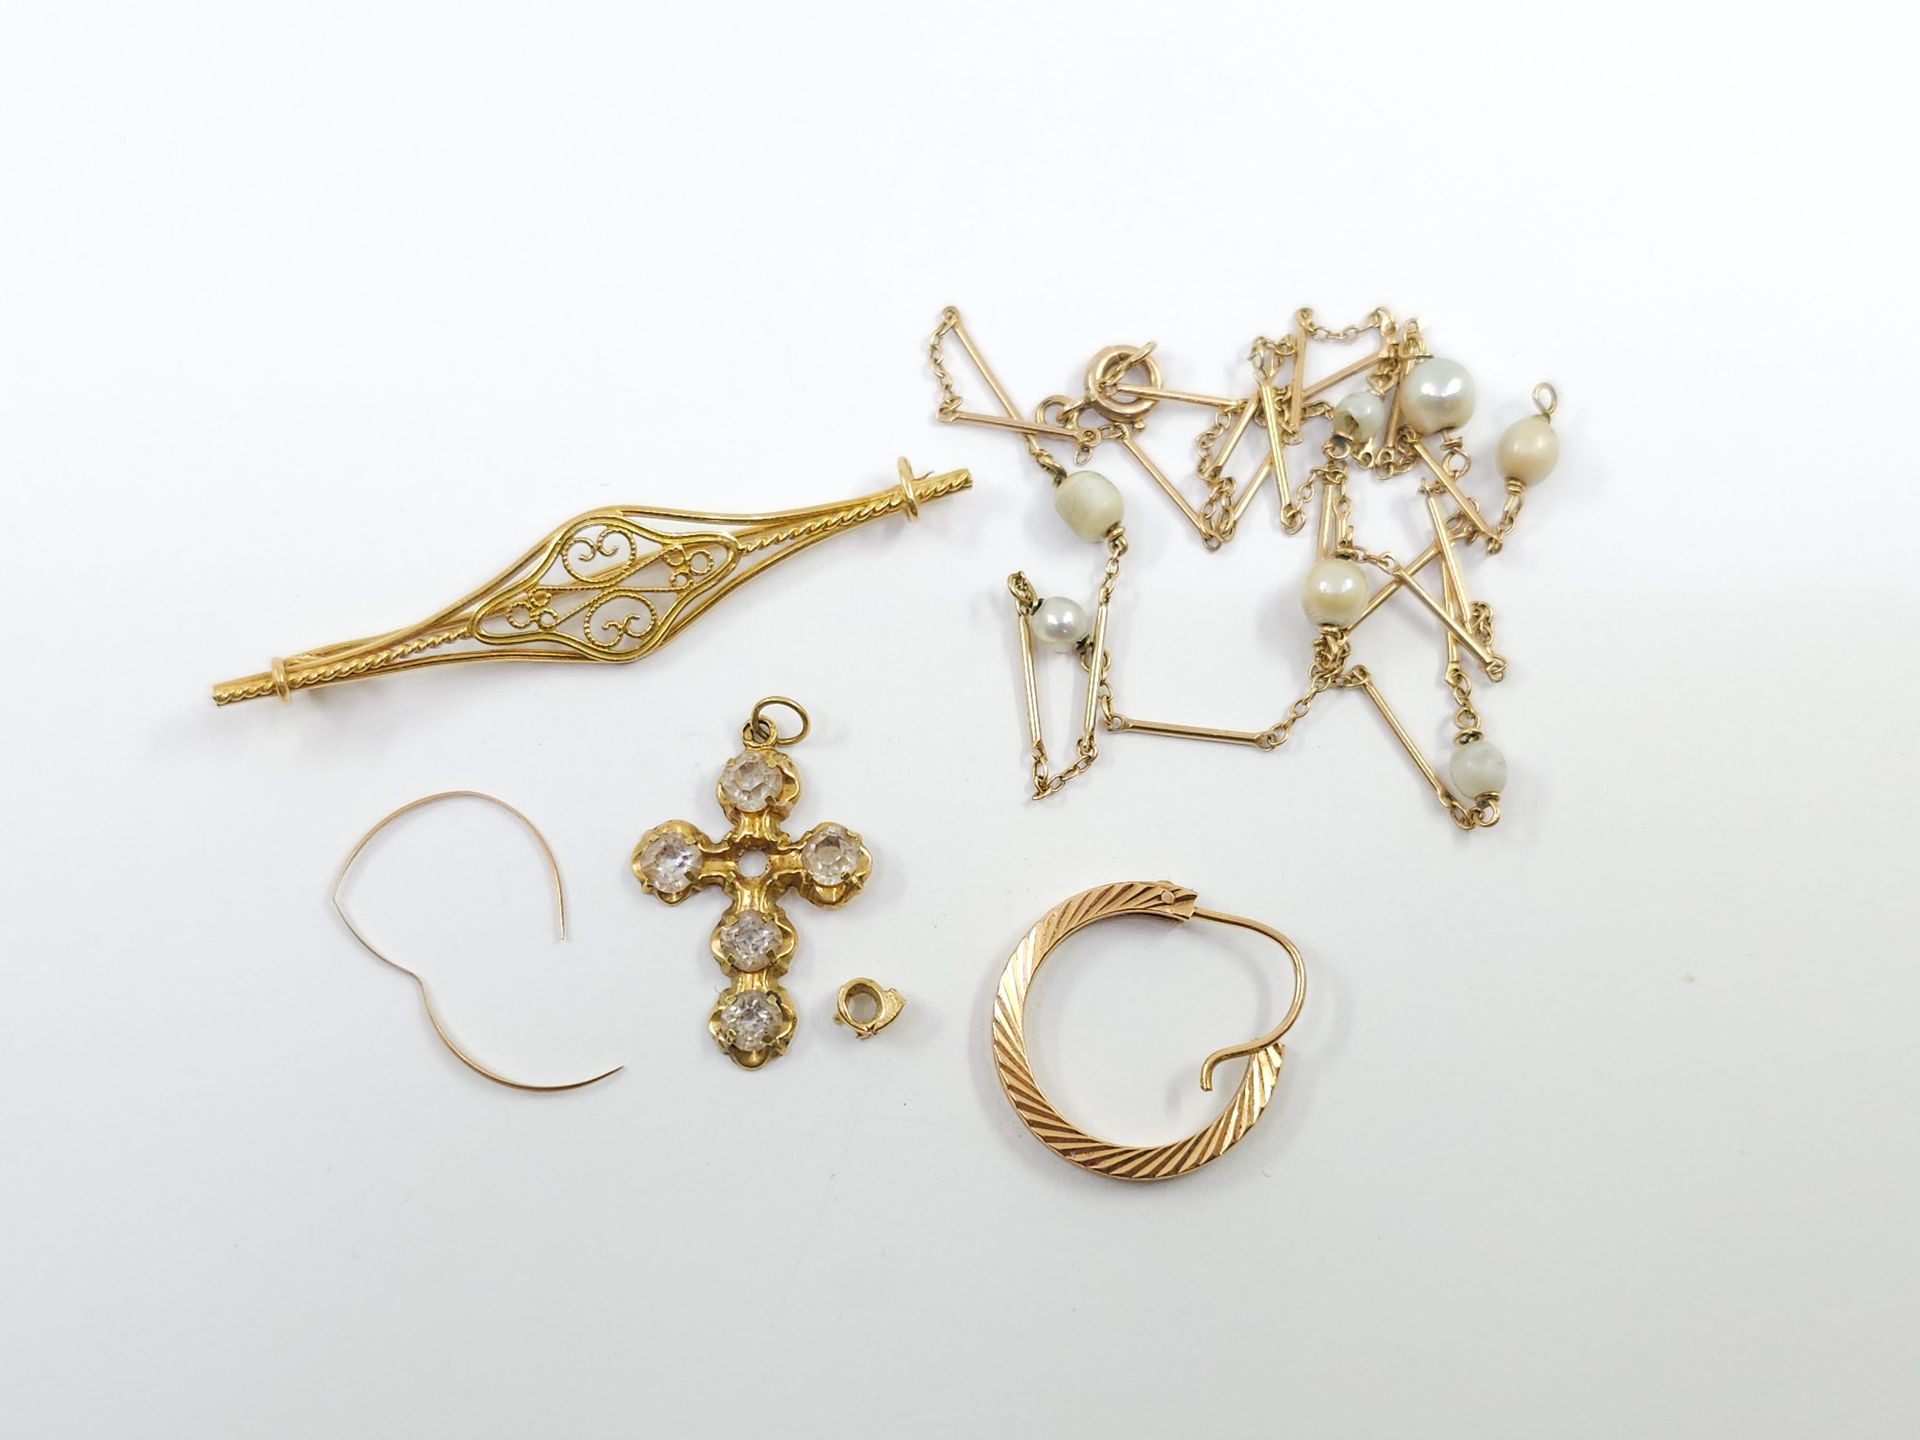 Null LOTE de oro 750° compuesto por :
Collar de oro amarillo y perlas 
Broche de&hellip;